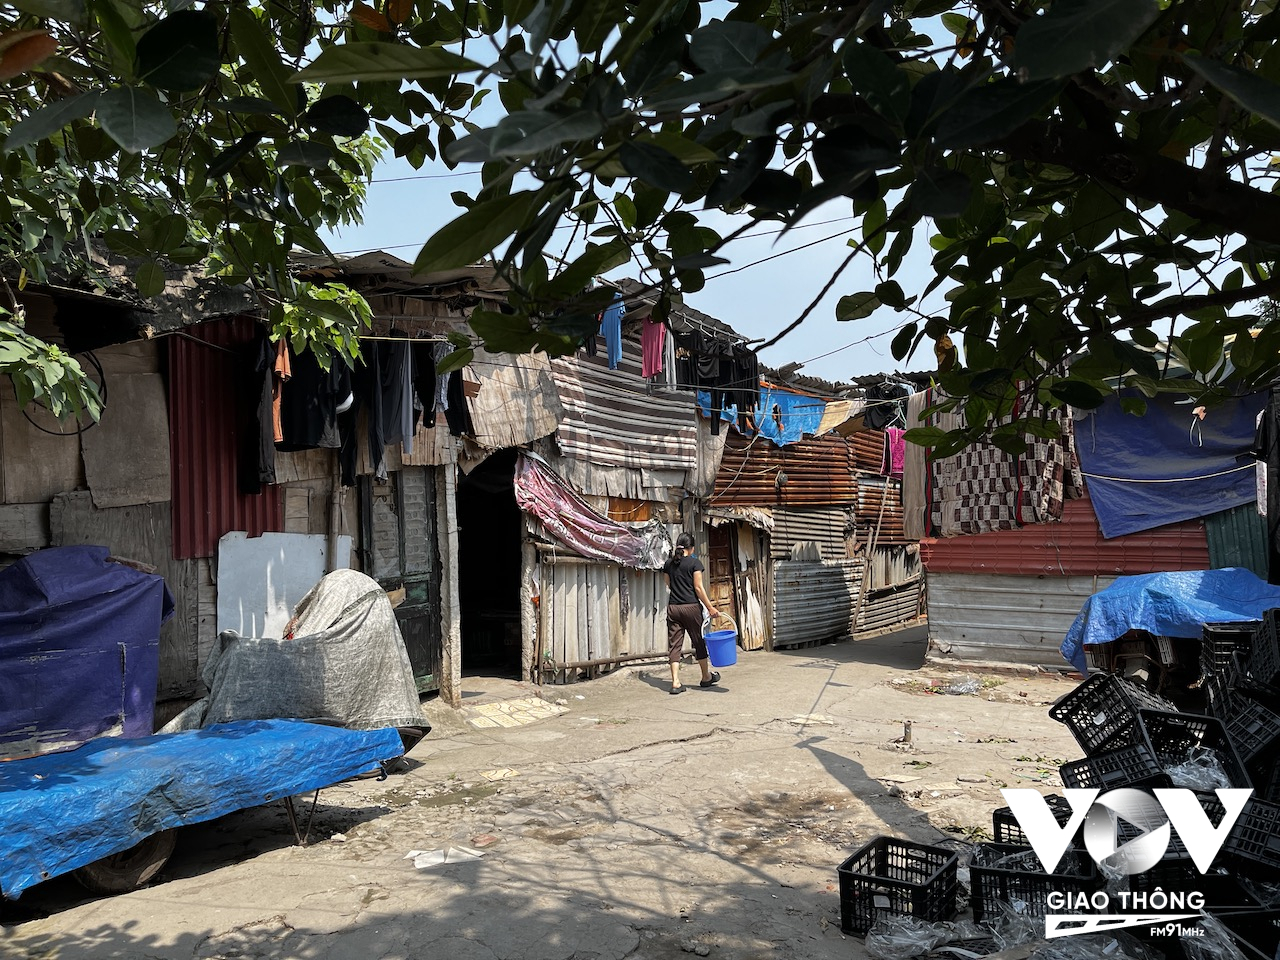 Cư dân ở phường Phúc Xá chủ yếu là người lao động nghèo... sống trong những căn nhà tạm lụp xụp như thế này...